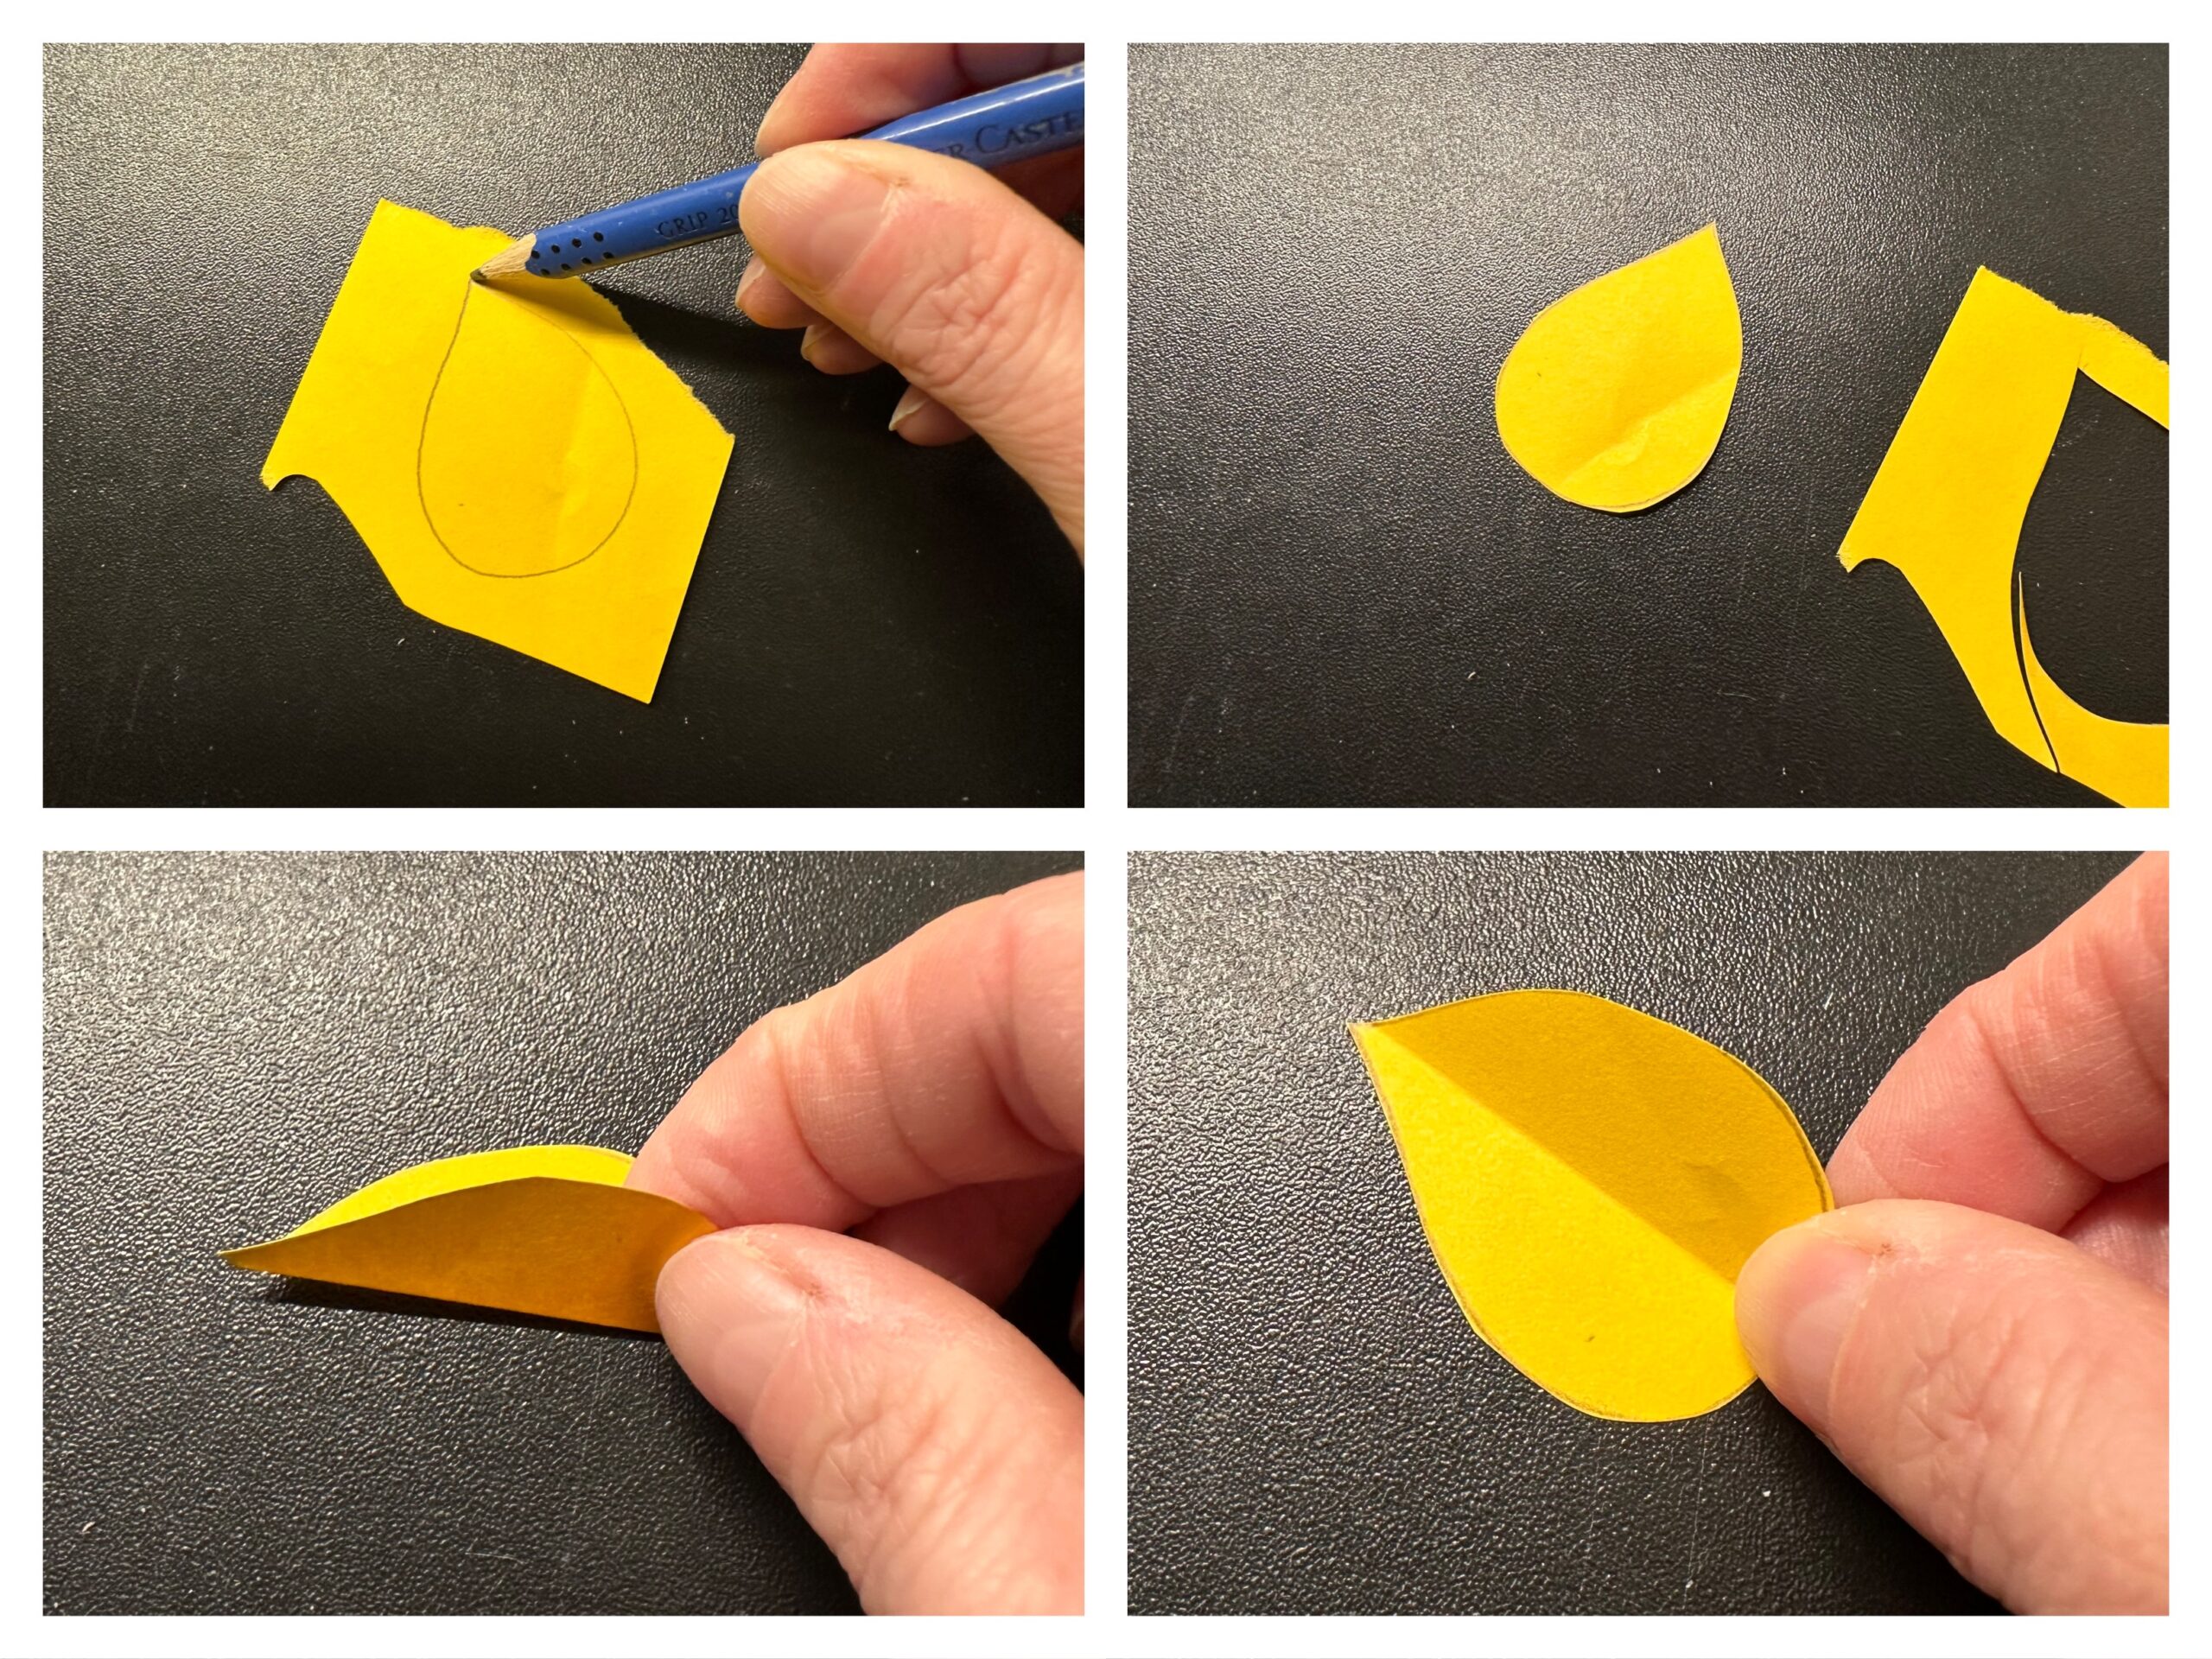 Bild zum Schritt 9 für das Bastel- und DIY-Abenteuer für Kinder: 'Male auf gelbes Tonpapier eine Flamme. Sie hat die Form...'